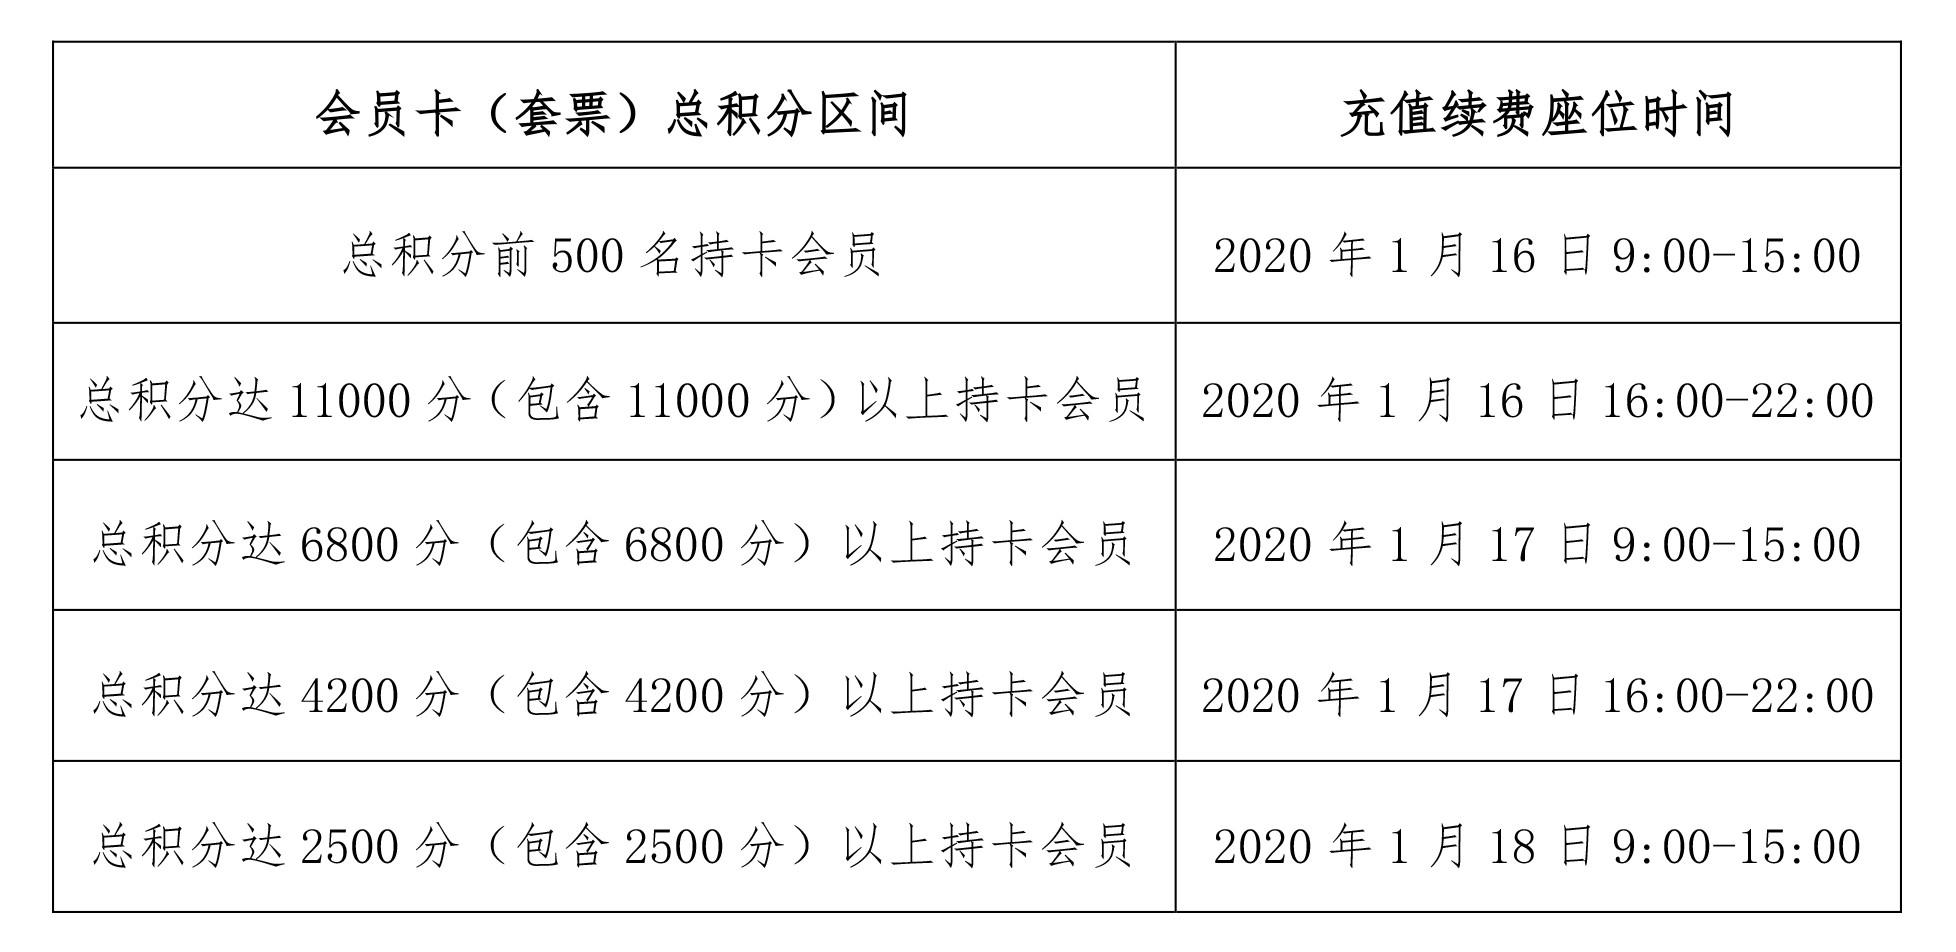 中超足球宝贝充值 广州恒大淘宝足球俱乐部2020赛季会员卡(2)